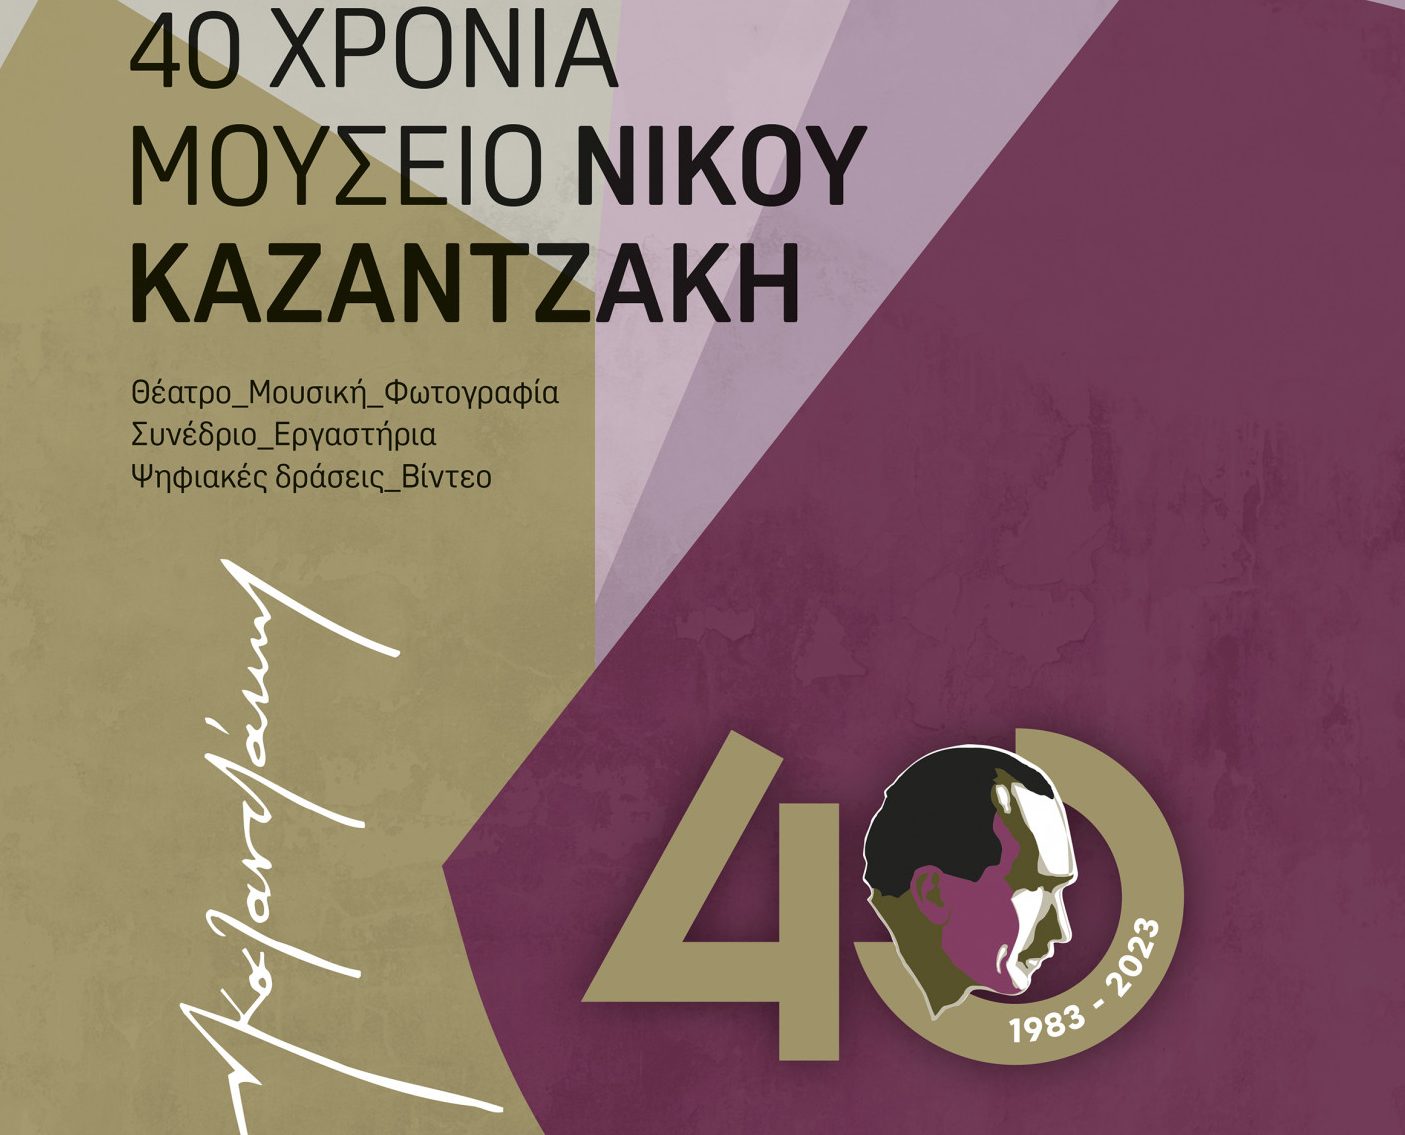 Το Μουσείο Νίκου Καζαντζάκη γιορτάζει 40 χρόνια λειτουργίας και το γιορτάζει – Όλο το πρόγραμμα εκδηλώσεων